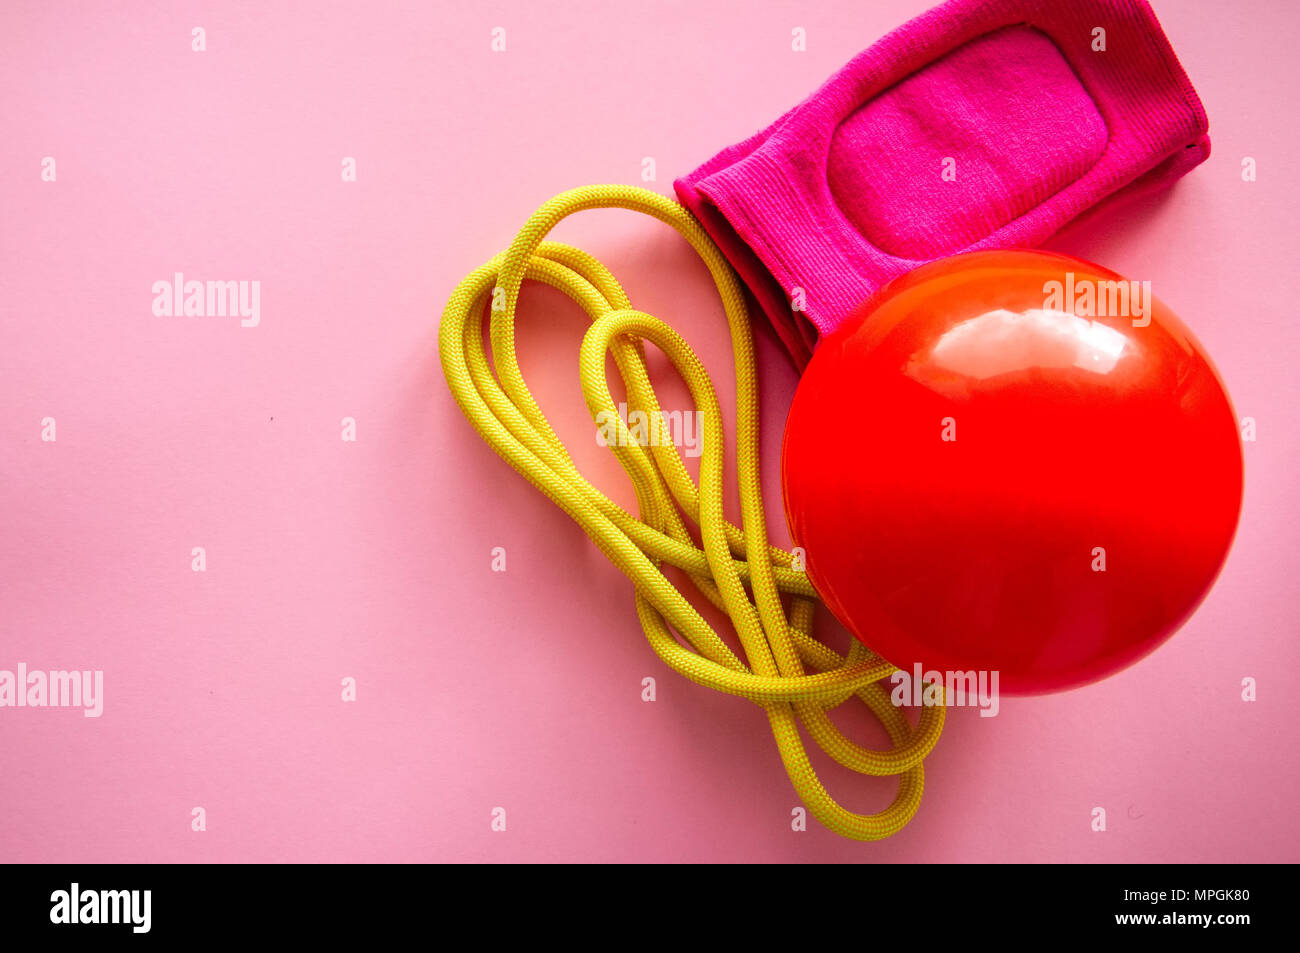 Rot Gymnastikball, Knieschoner und Springseil auf einem rosa Hintergrund. Sport, Hobby und Lifestyle Konzept. Top ansehen und kopieren. Stockfoto